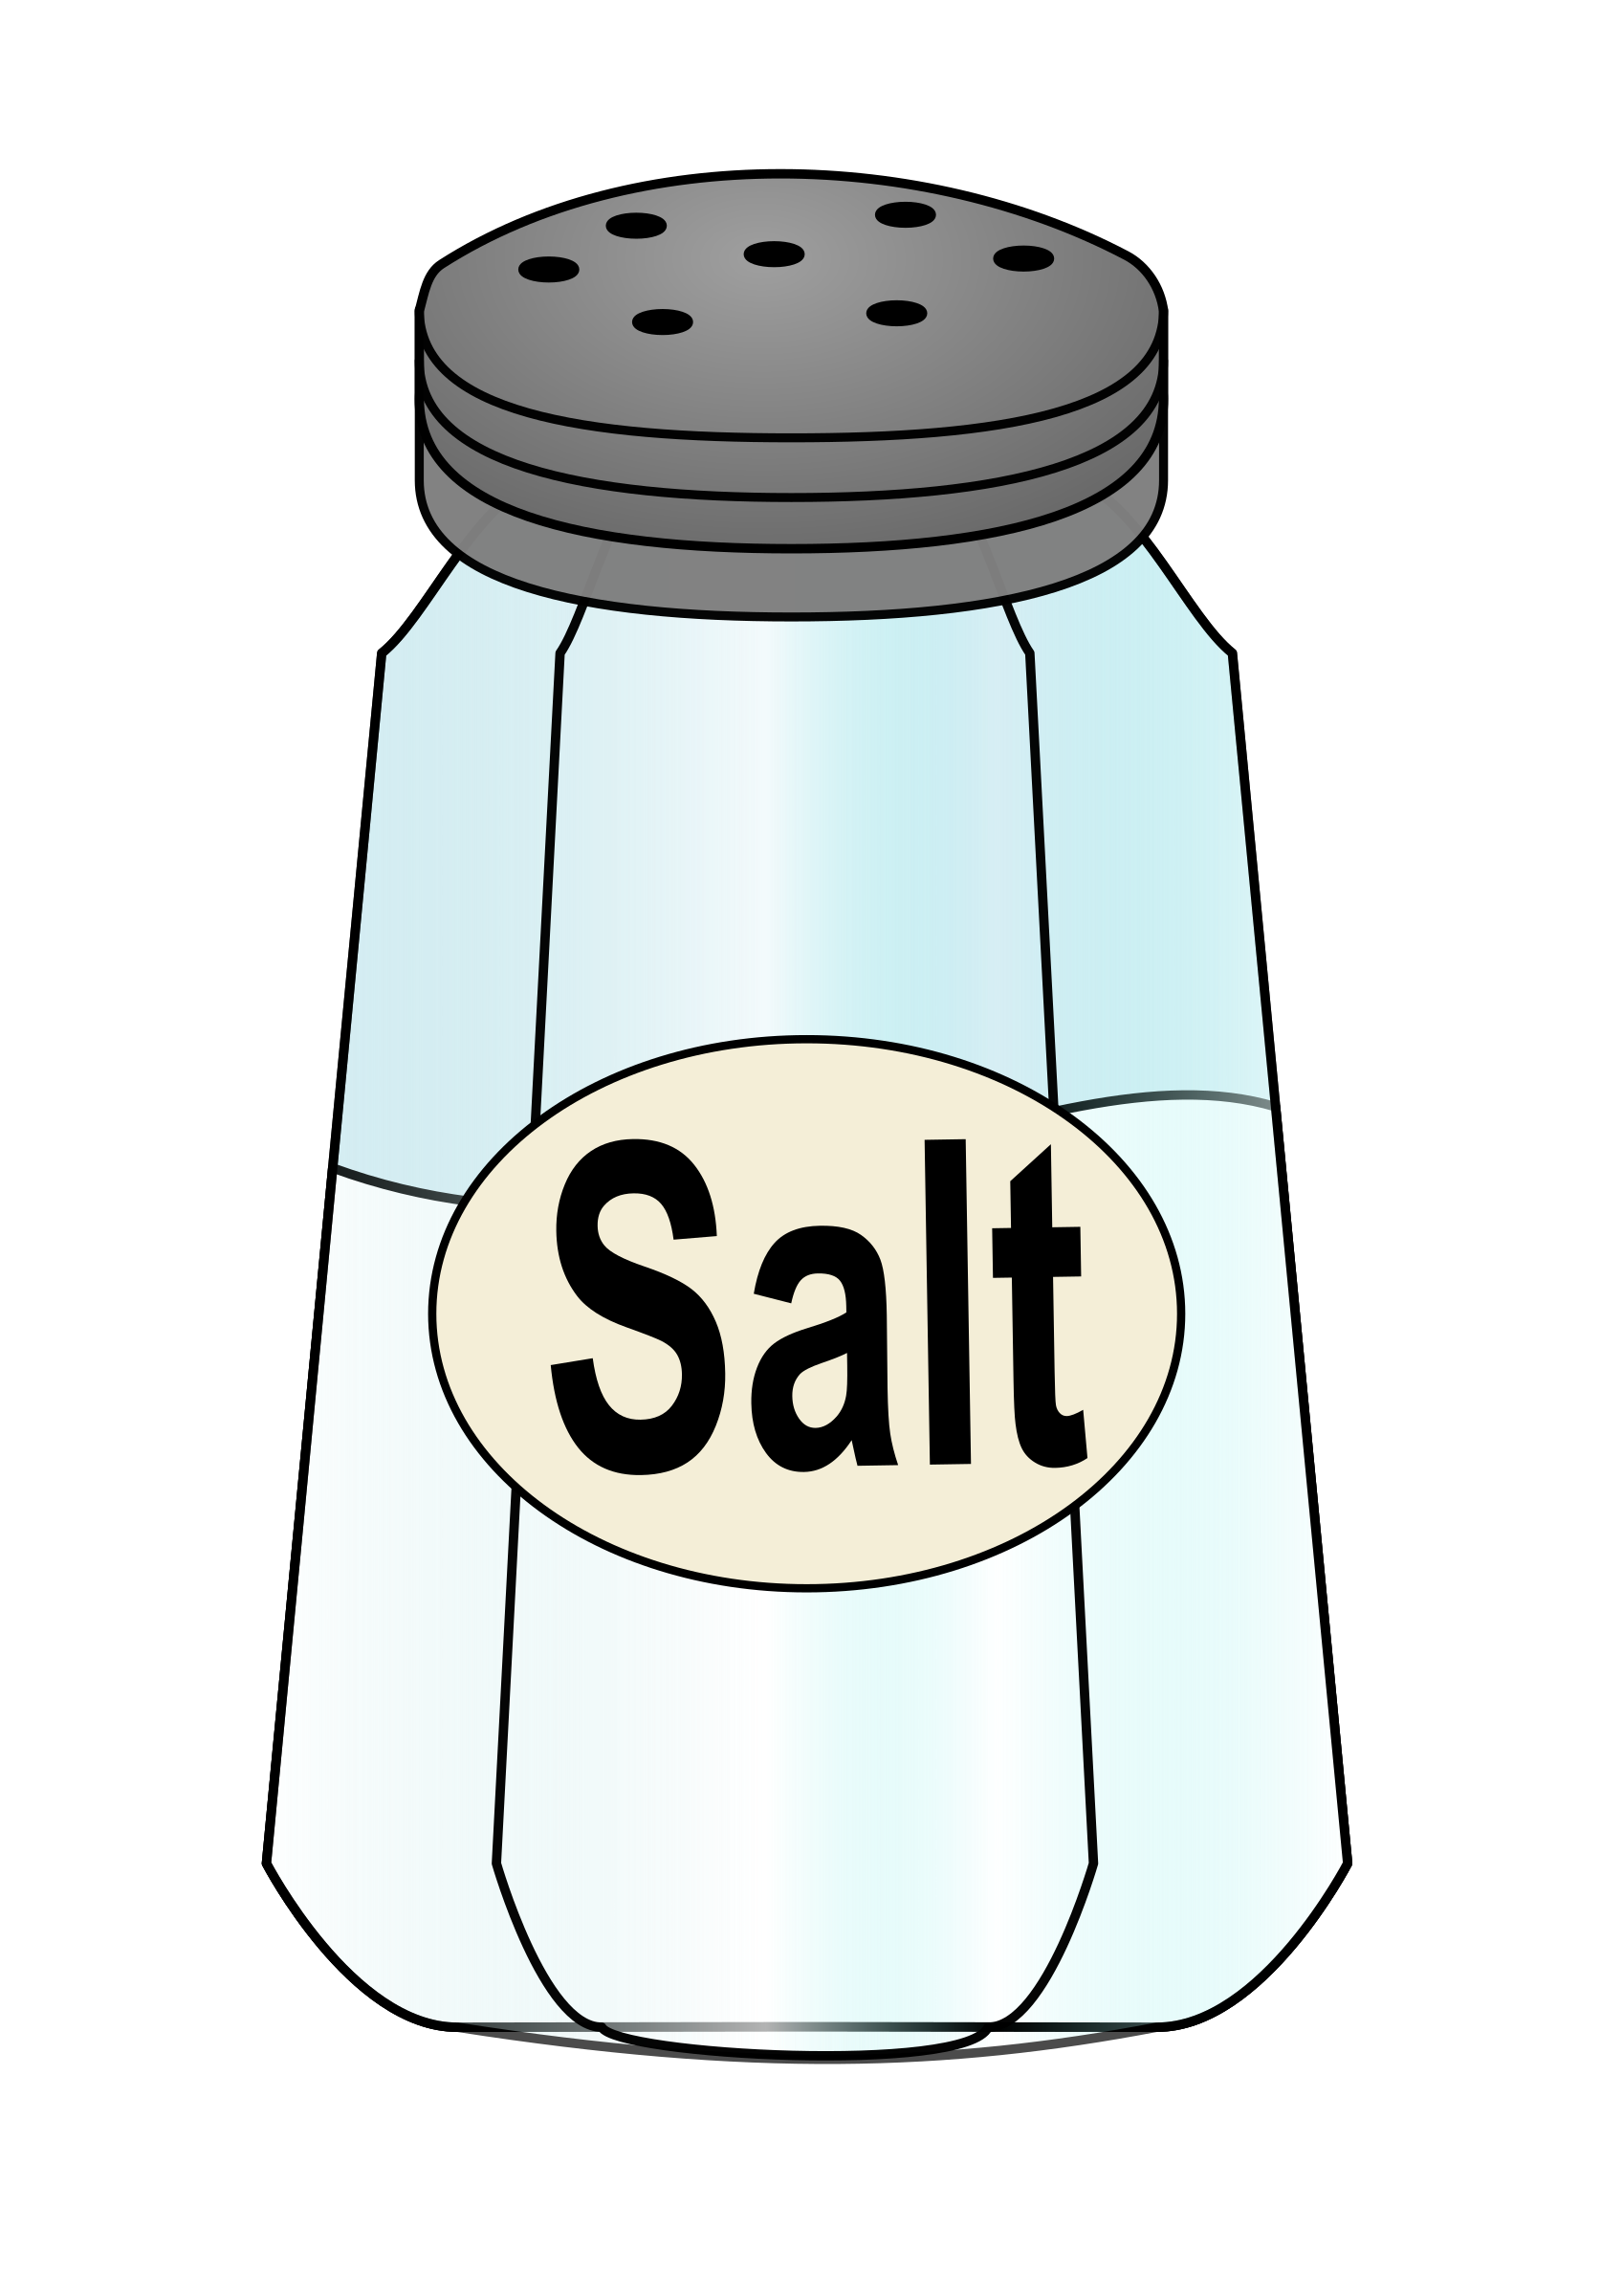 Salt PNG Image Transparent